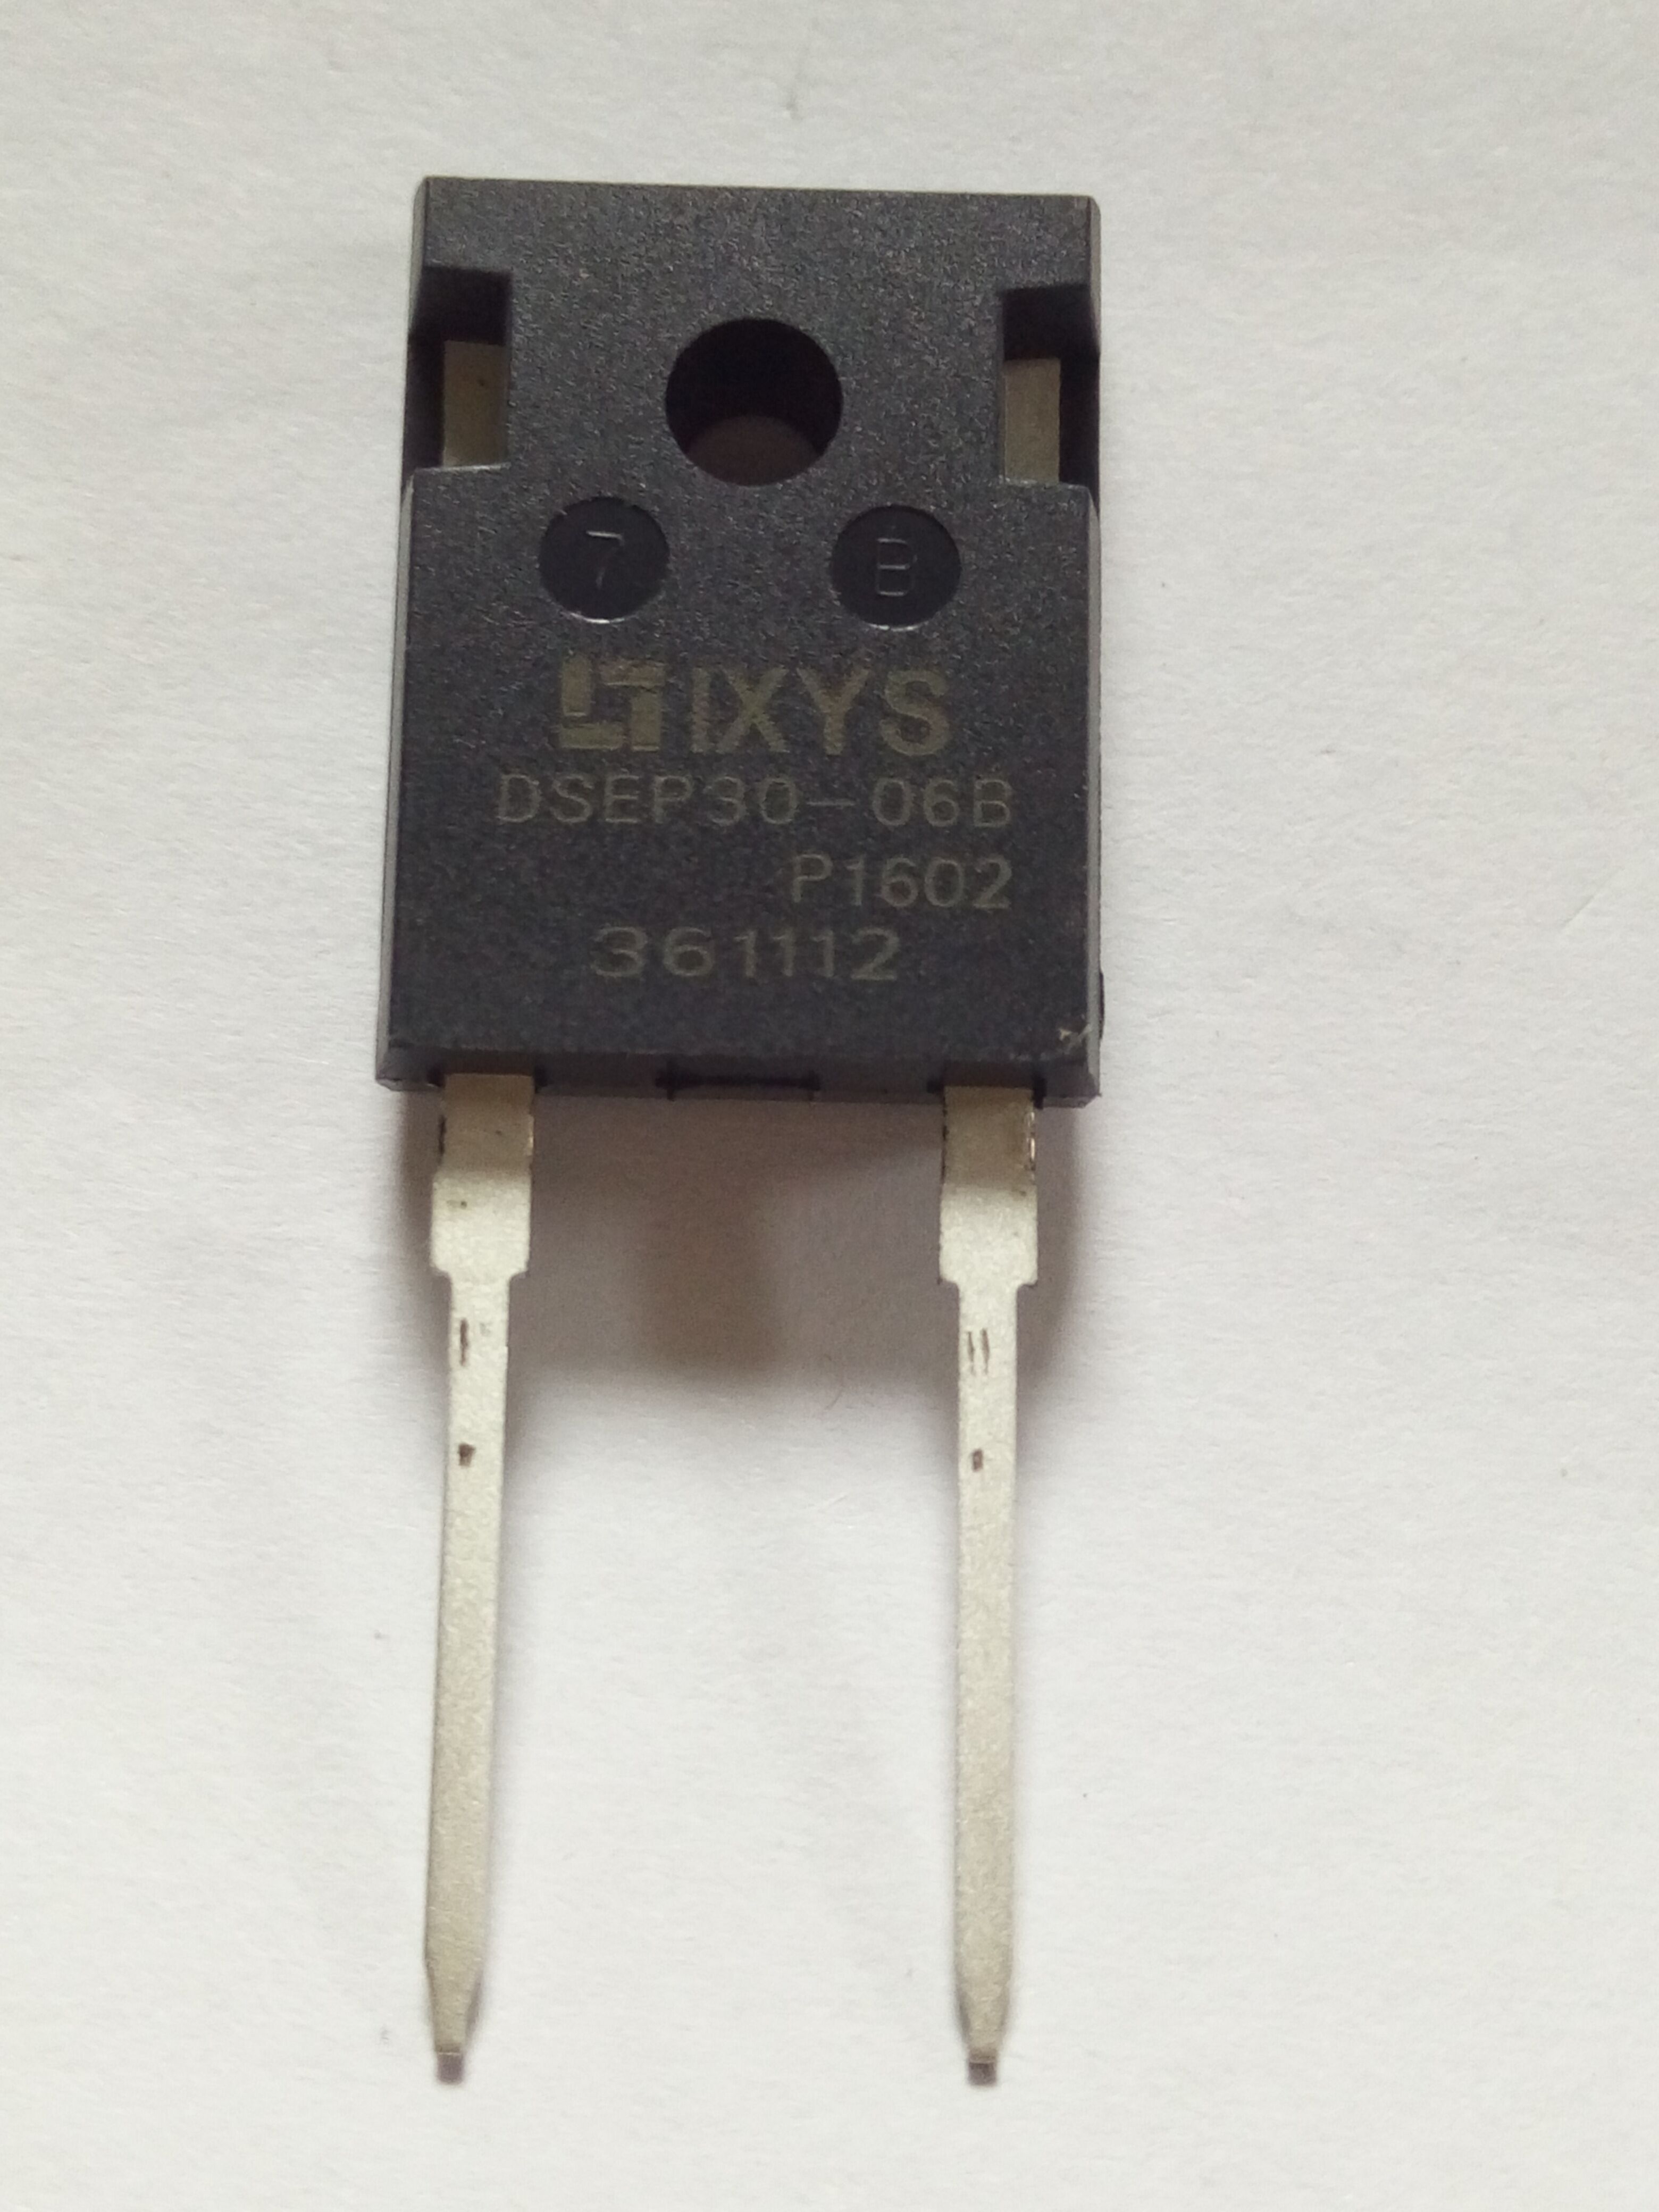 DSEP30-06B 快恢复管  IXYS现货供应 质优价廉 专业代理 原装进口 更多产品欢迎来电咨询